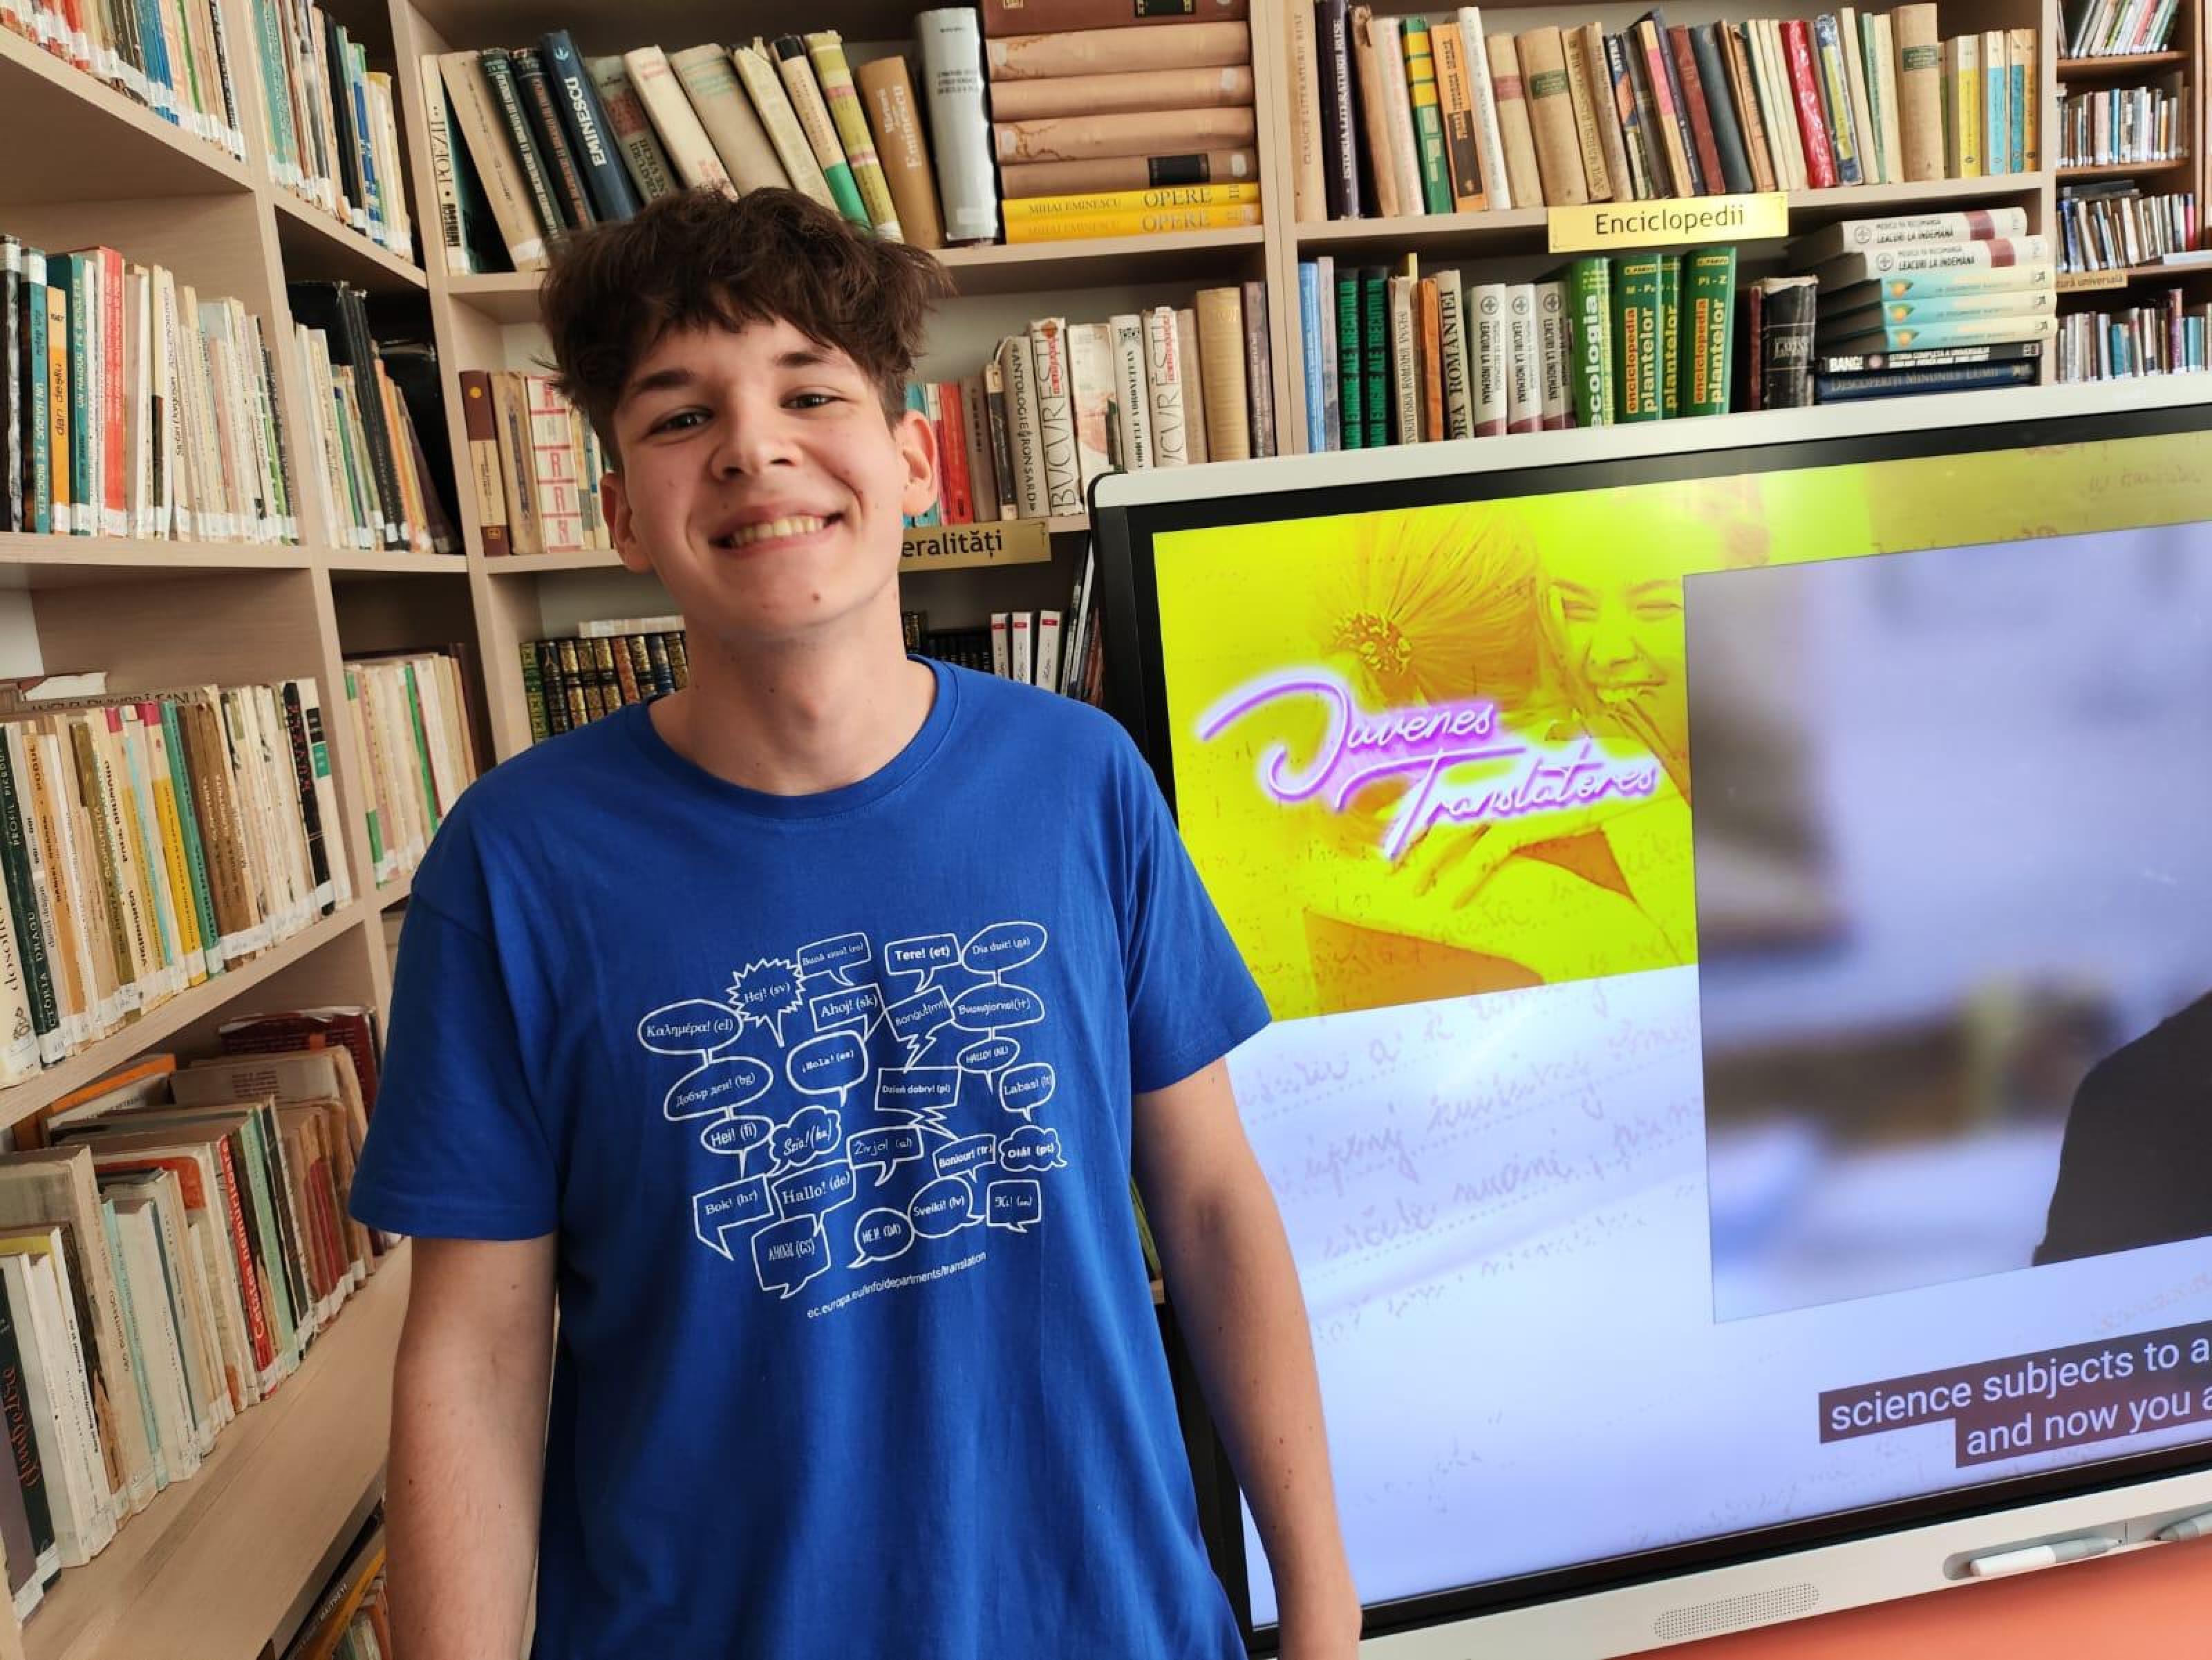 Matei Abălaru, the Romanian winner of EU’s young translator contest